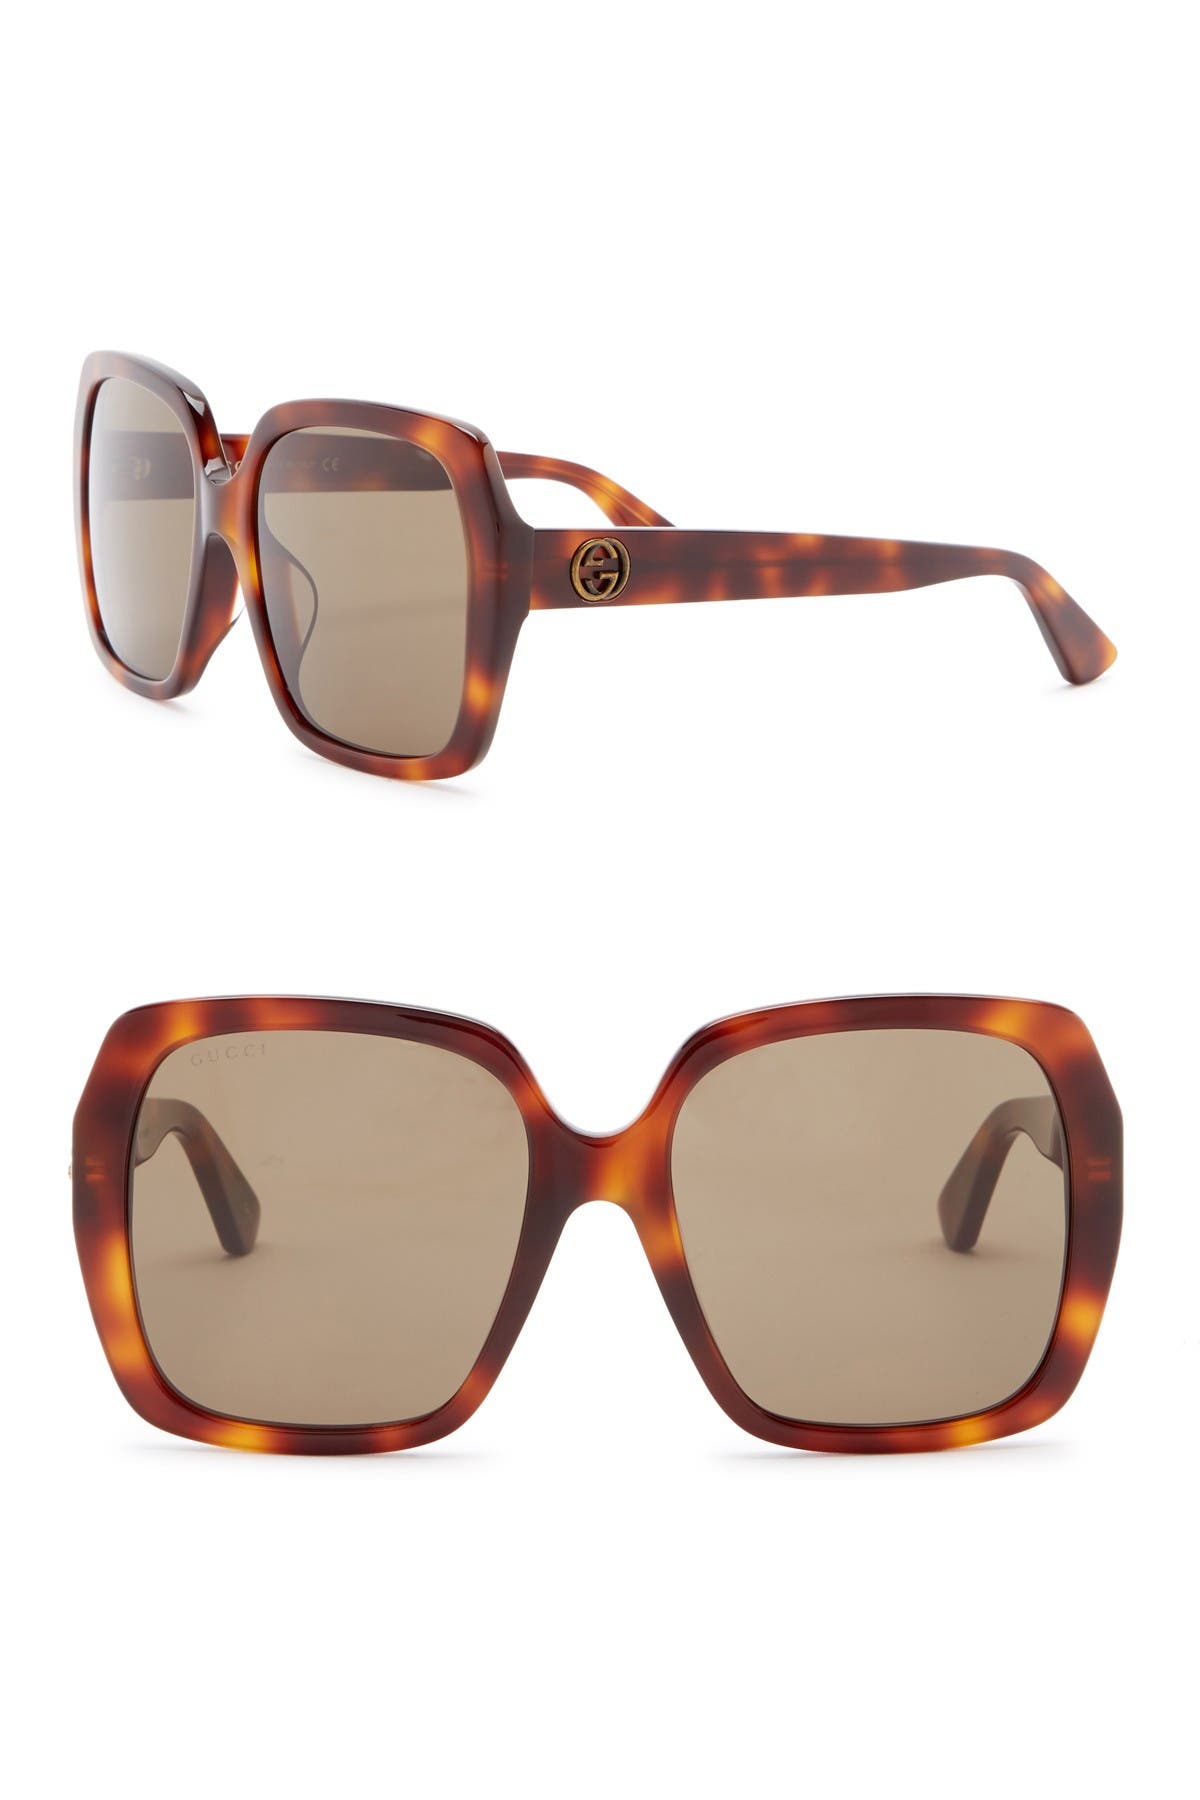 gucci 55mm oversized square sunglasses